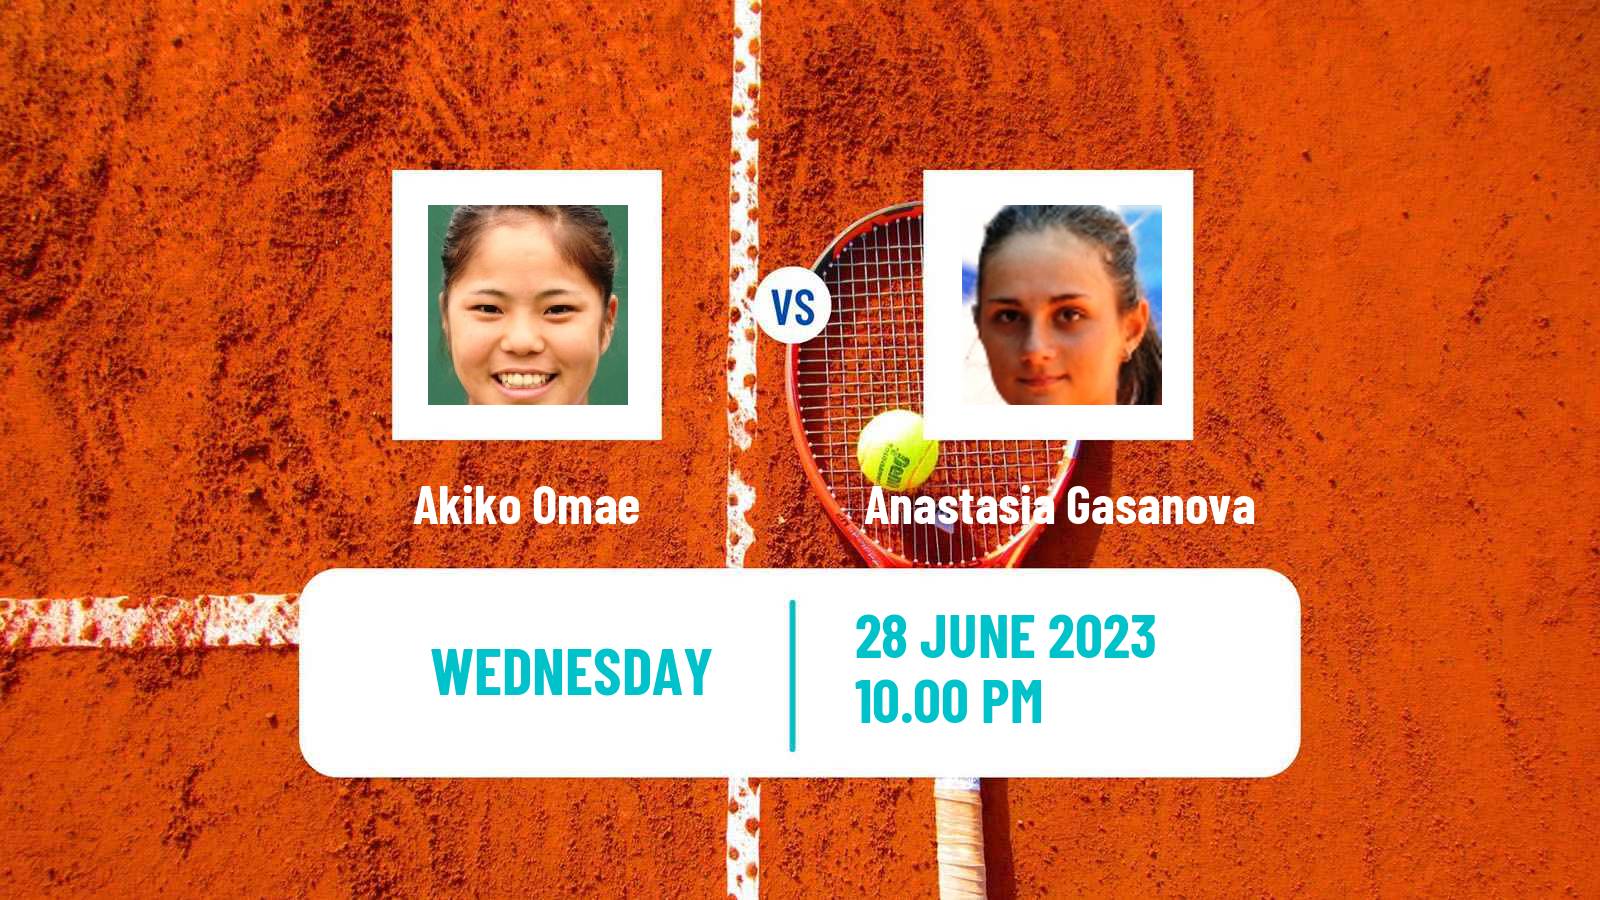 Tennis ITF W25 Hong Kong Women Akiko Omae - Anastasia Gasanova